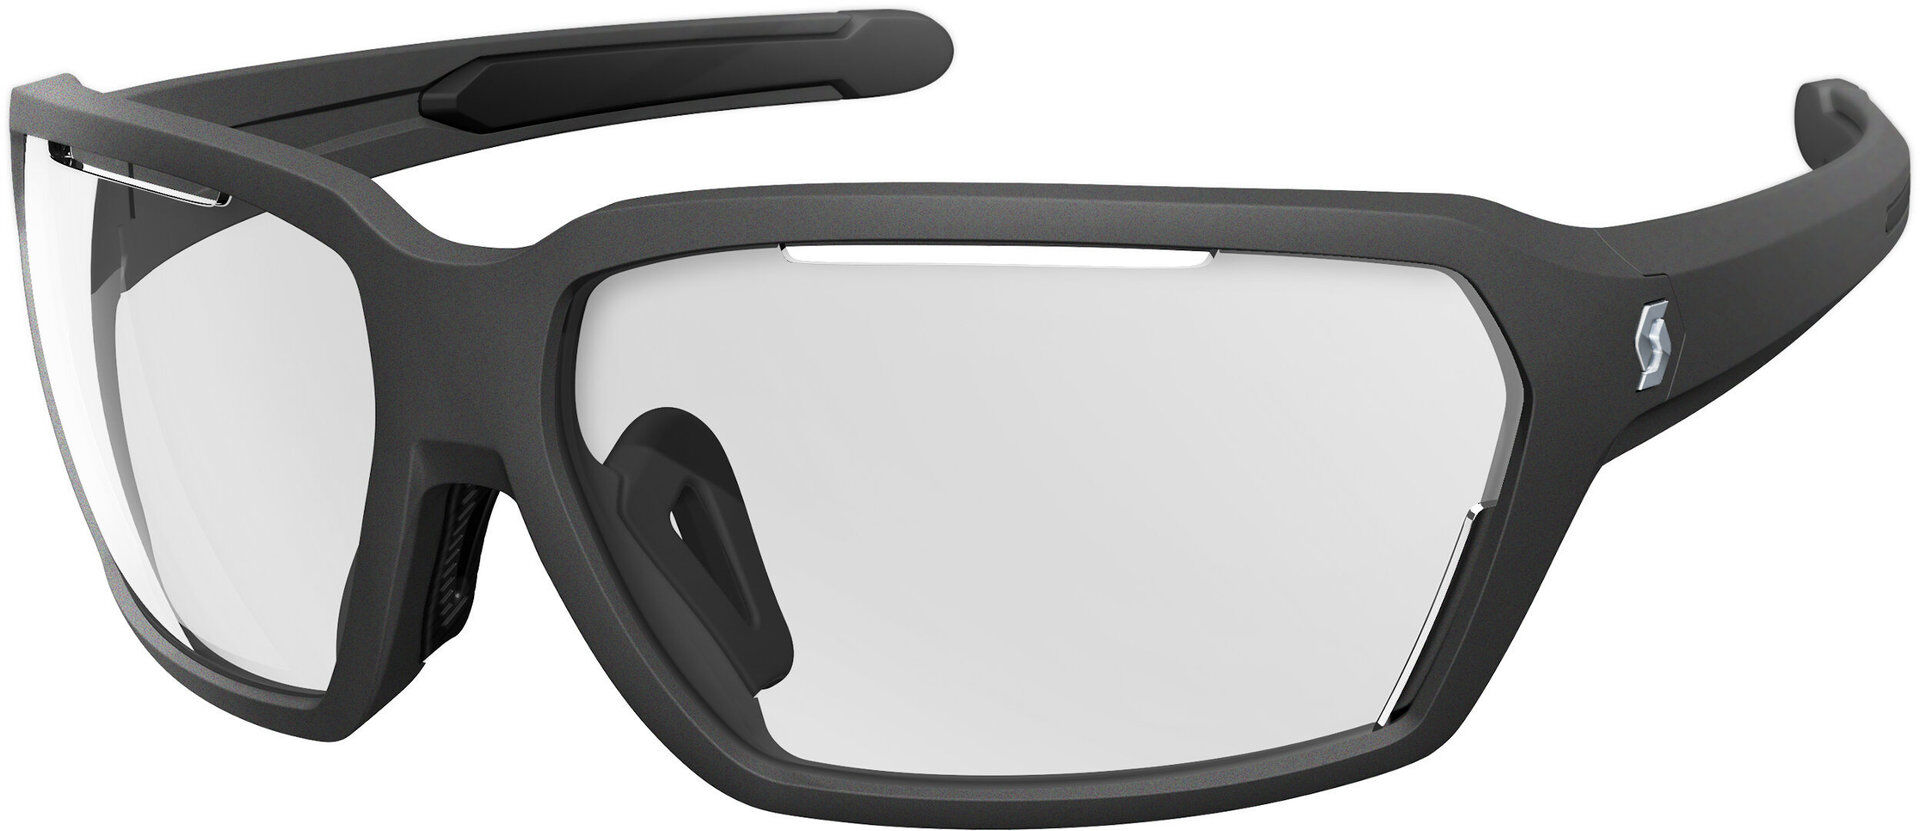 Scott Vector Okulary Przeciwsłoneczneczarny